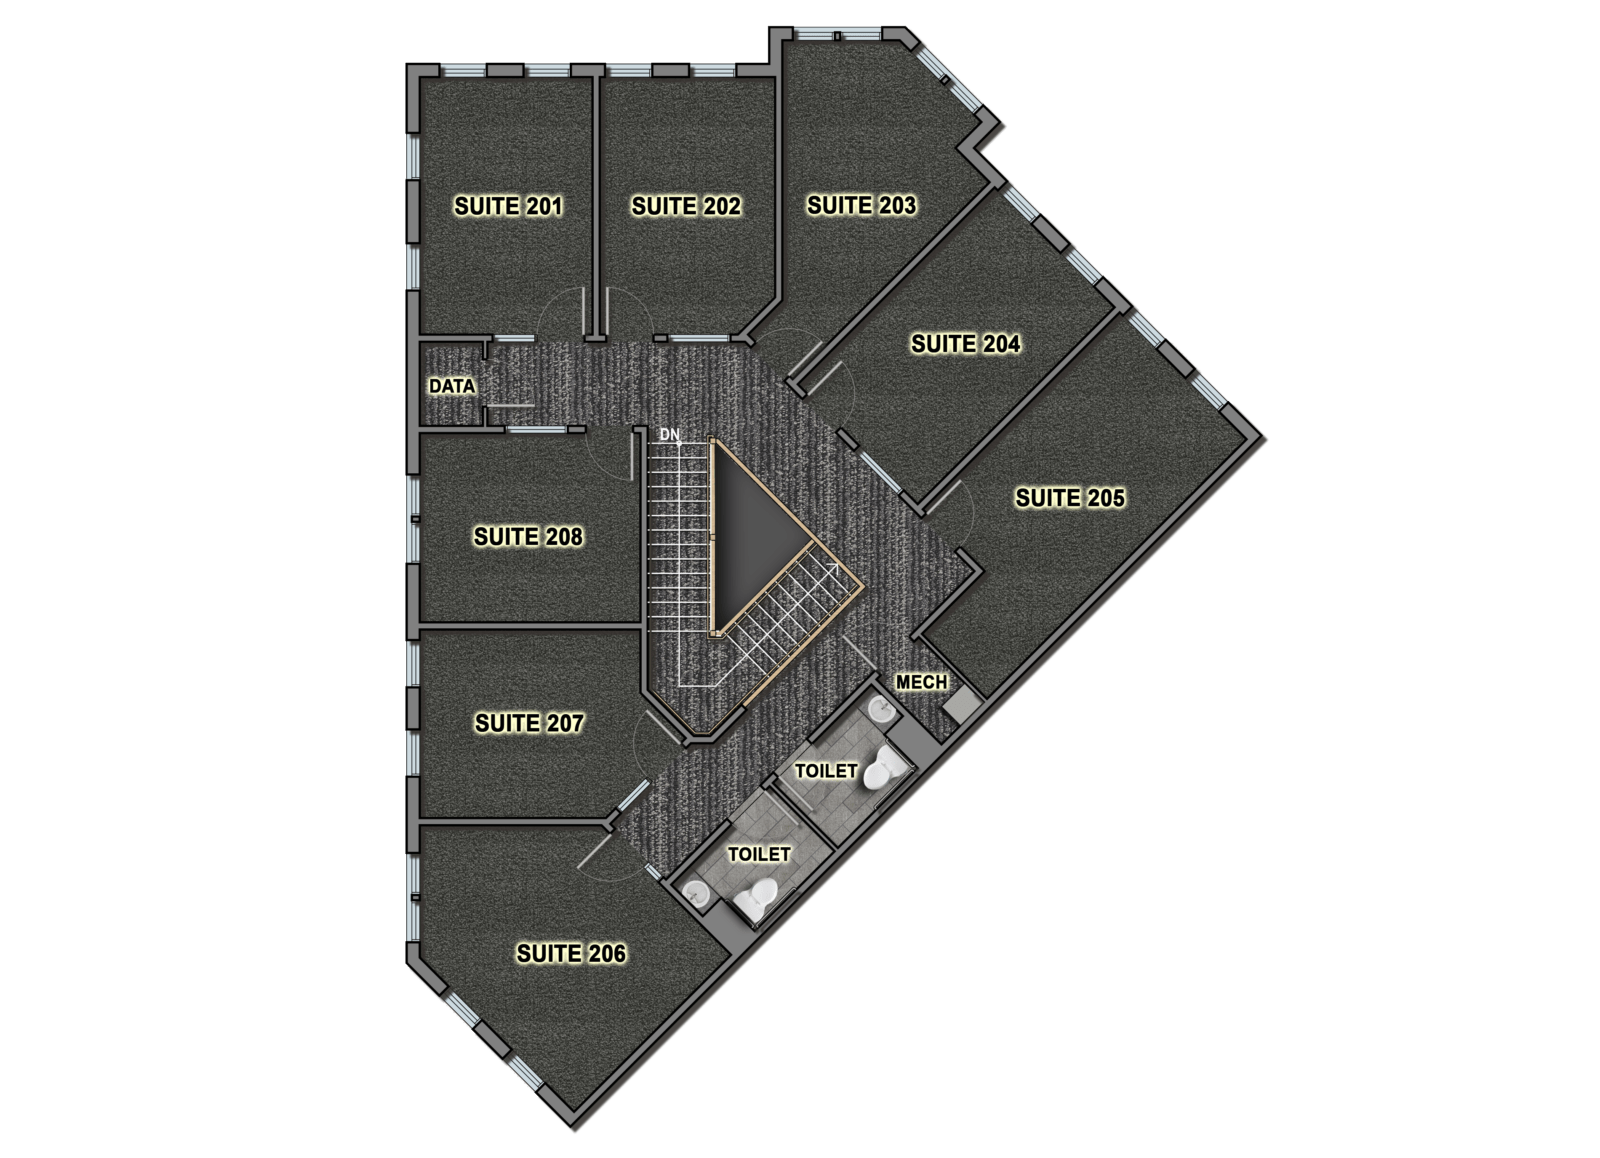 A floor plan of the second floor of suites